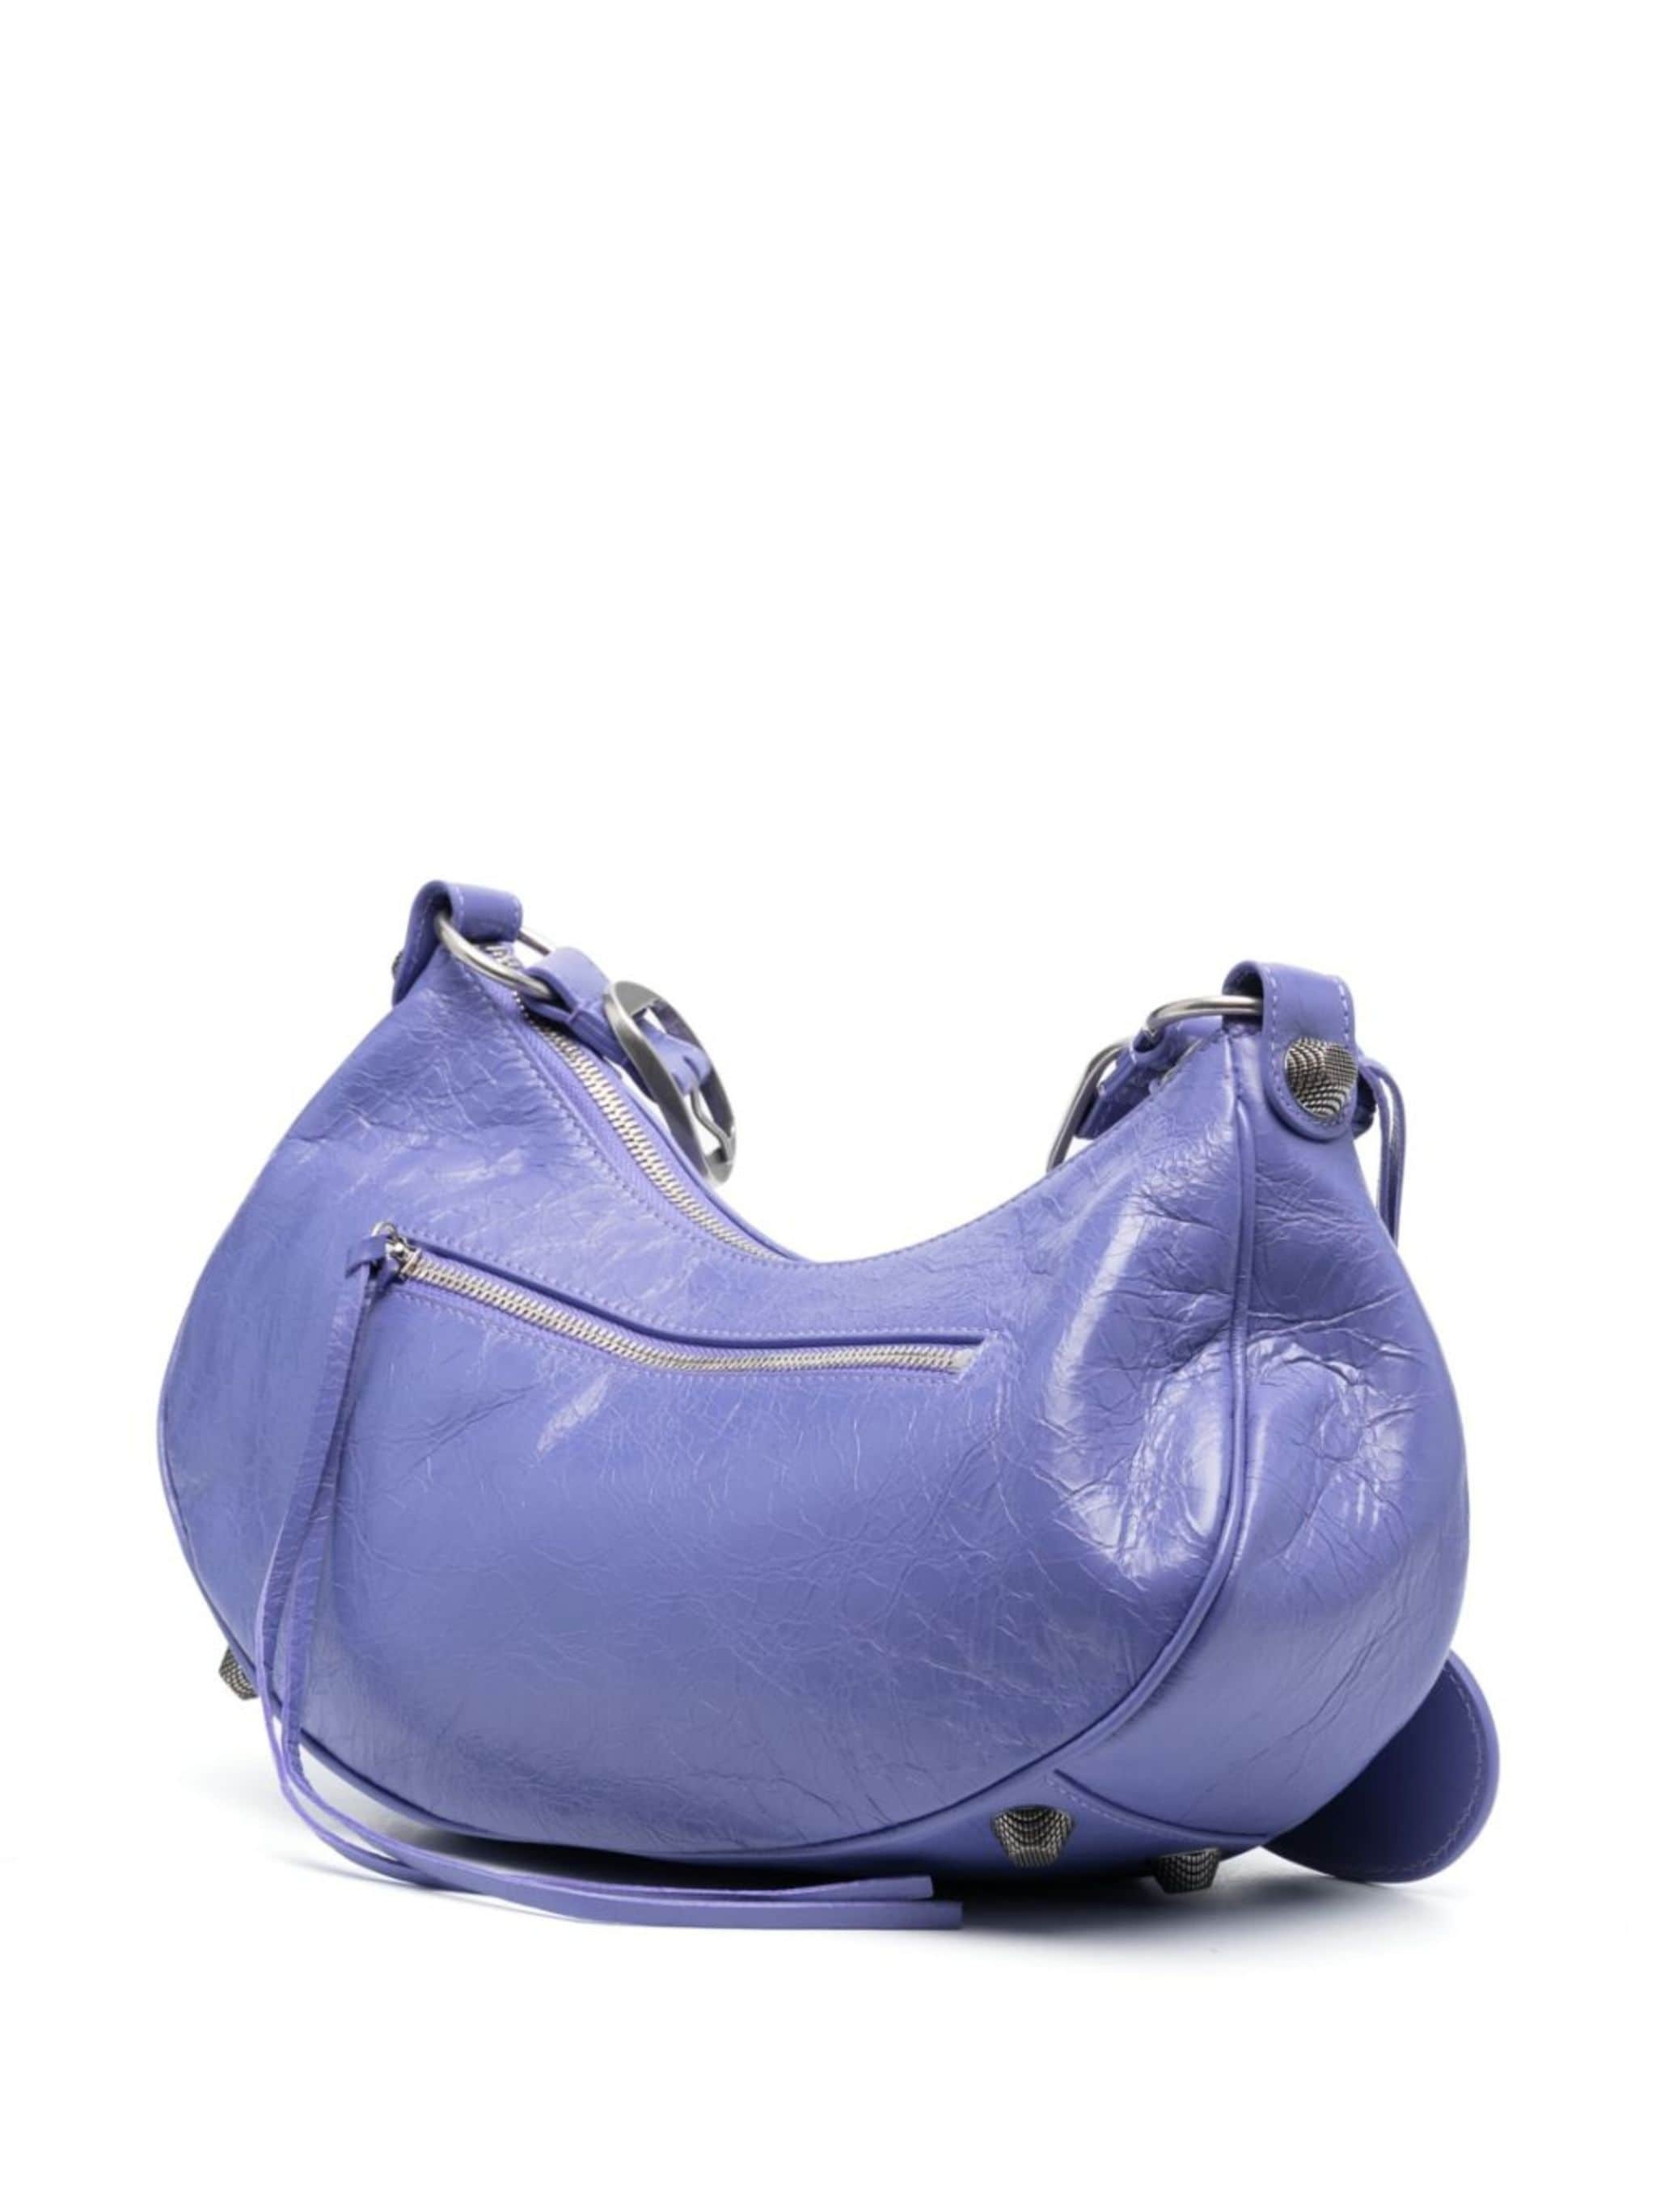 Le Cagole S leather shoulder bag - 3